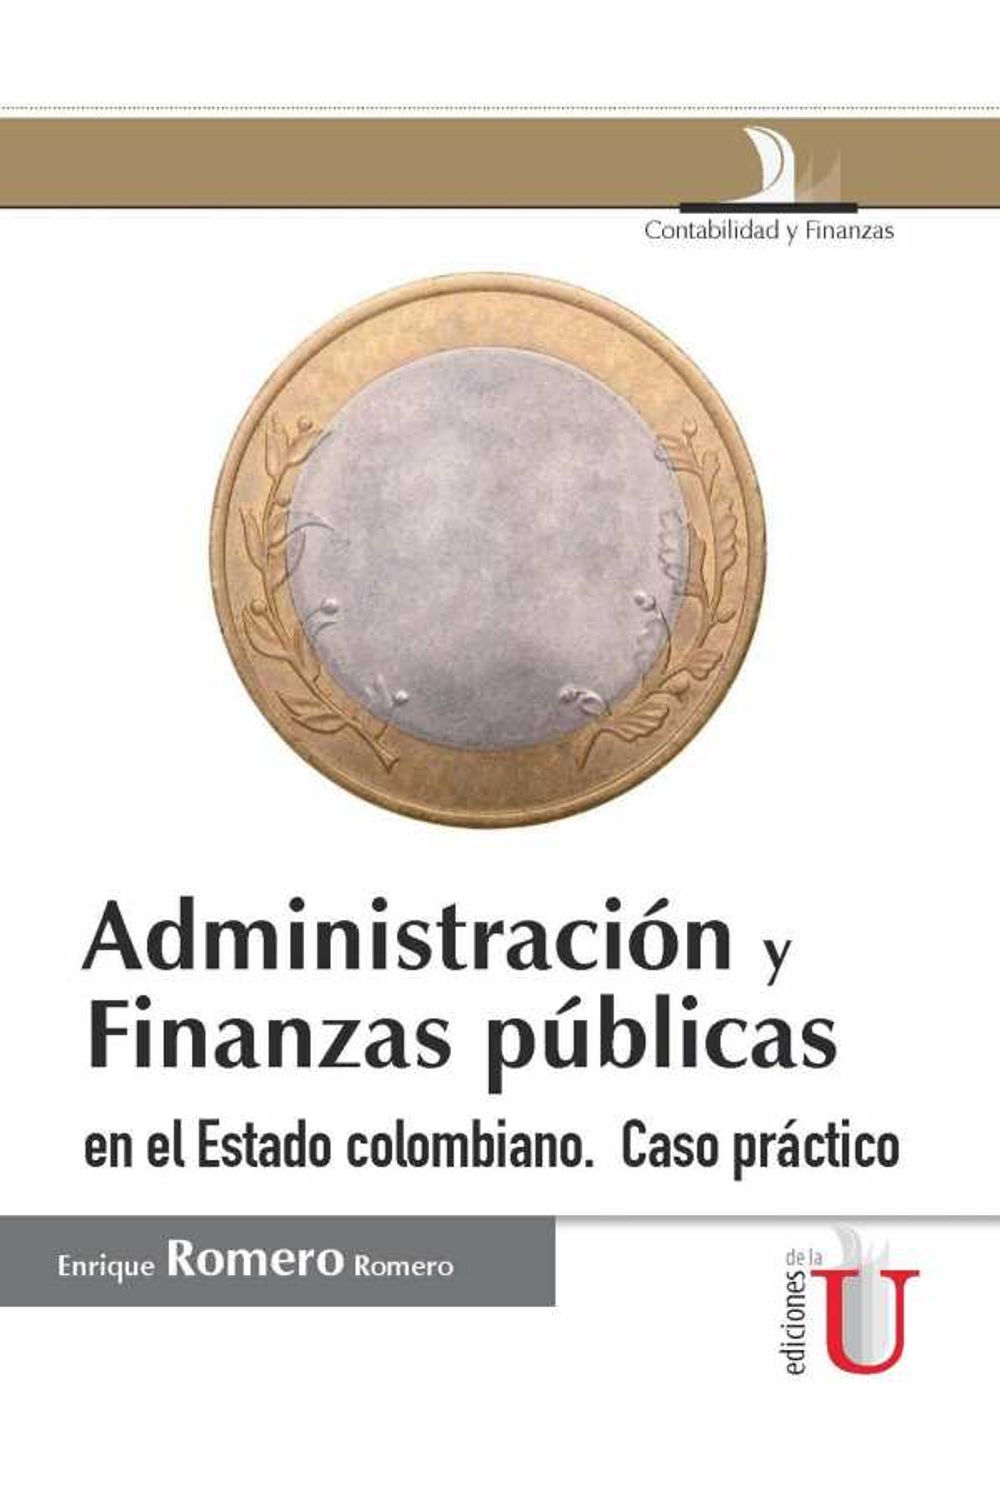 bw-administracioacuten-y-finanzas-puacuteblicas-en-el-estado-colombiano-ediciones-de-la-u-9789587624250